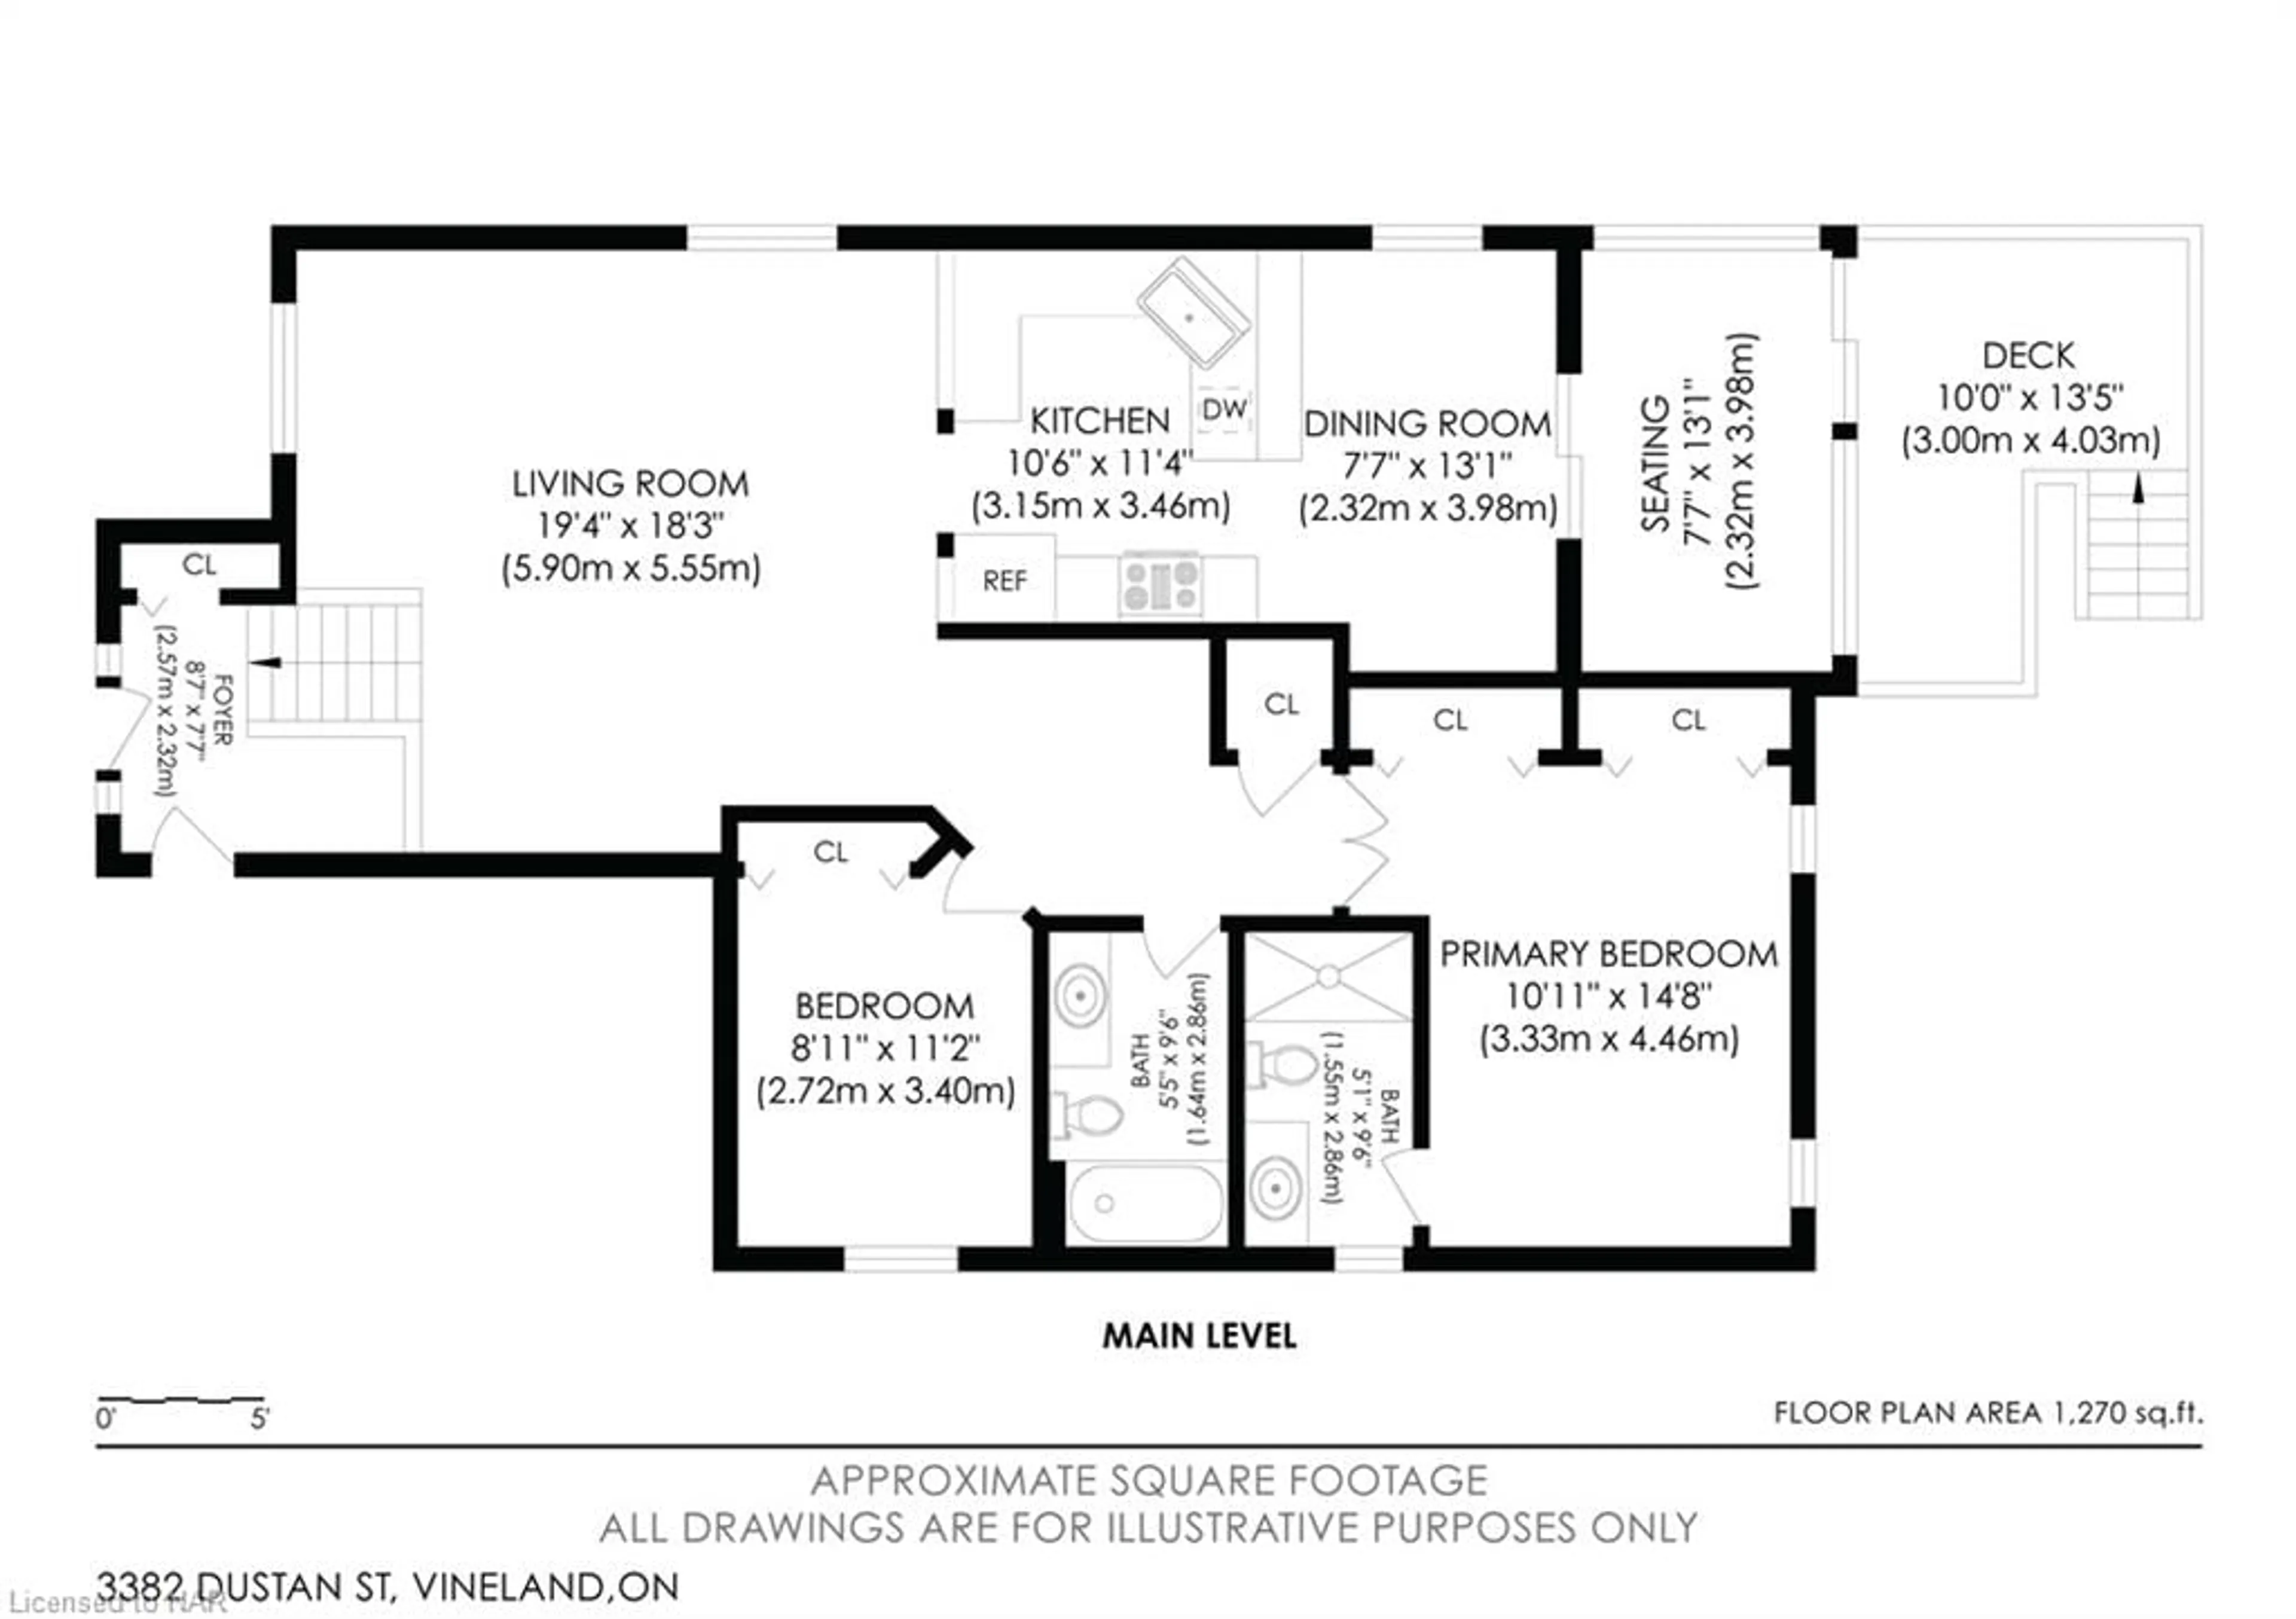 Floor plan for 3382 Dustan St, Vineland Ontario L0R 2E0